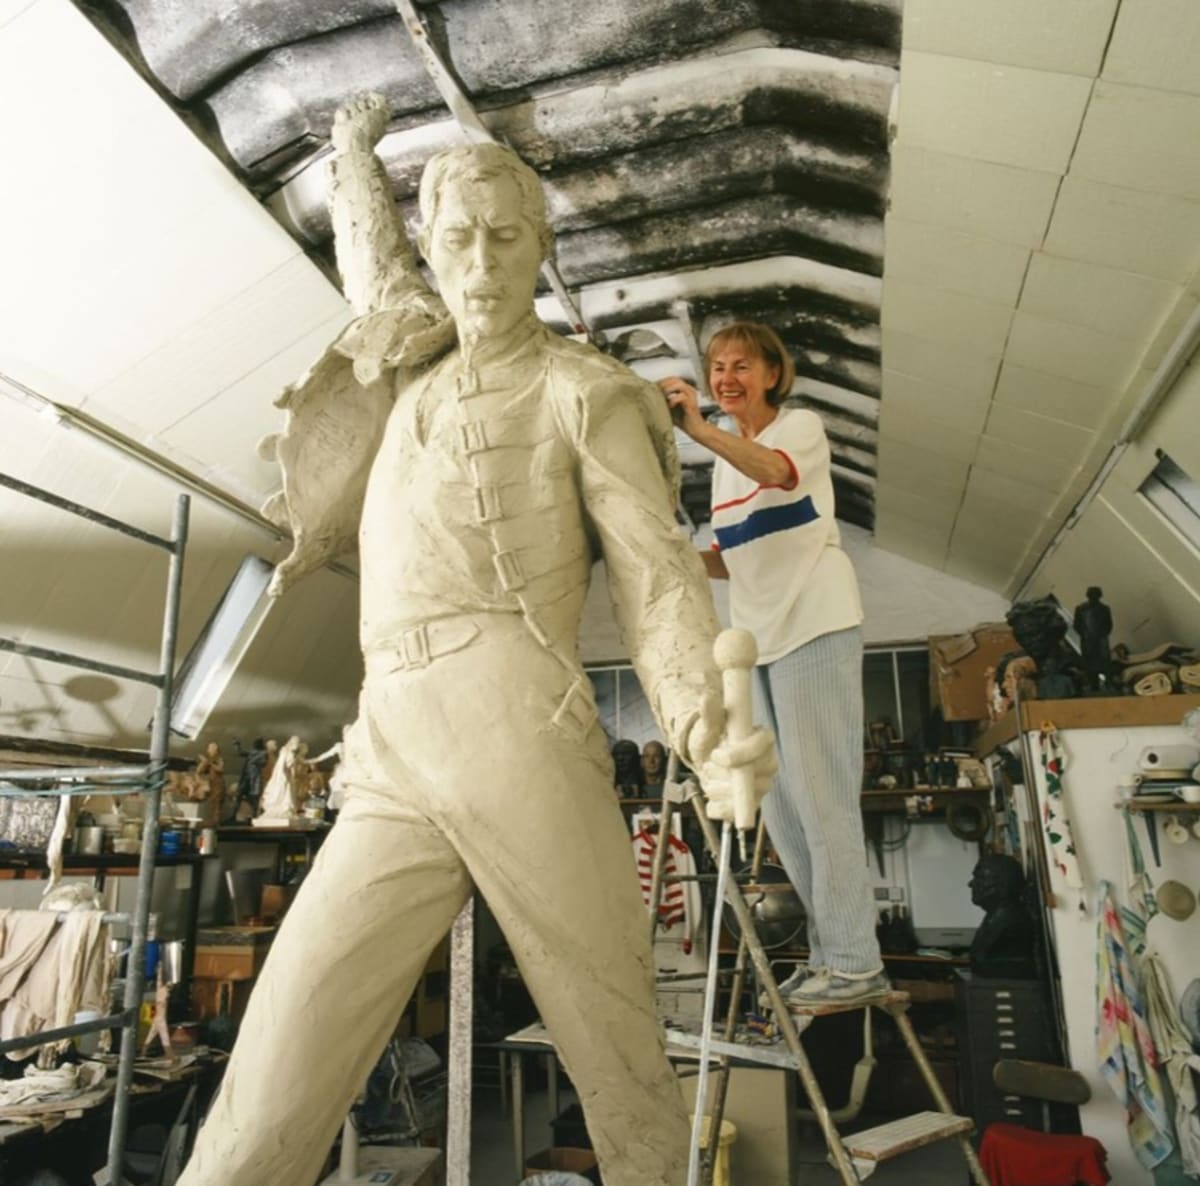 Sochařka Irena Sedlecká při práci na soše Freddieho Mercuryho